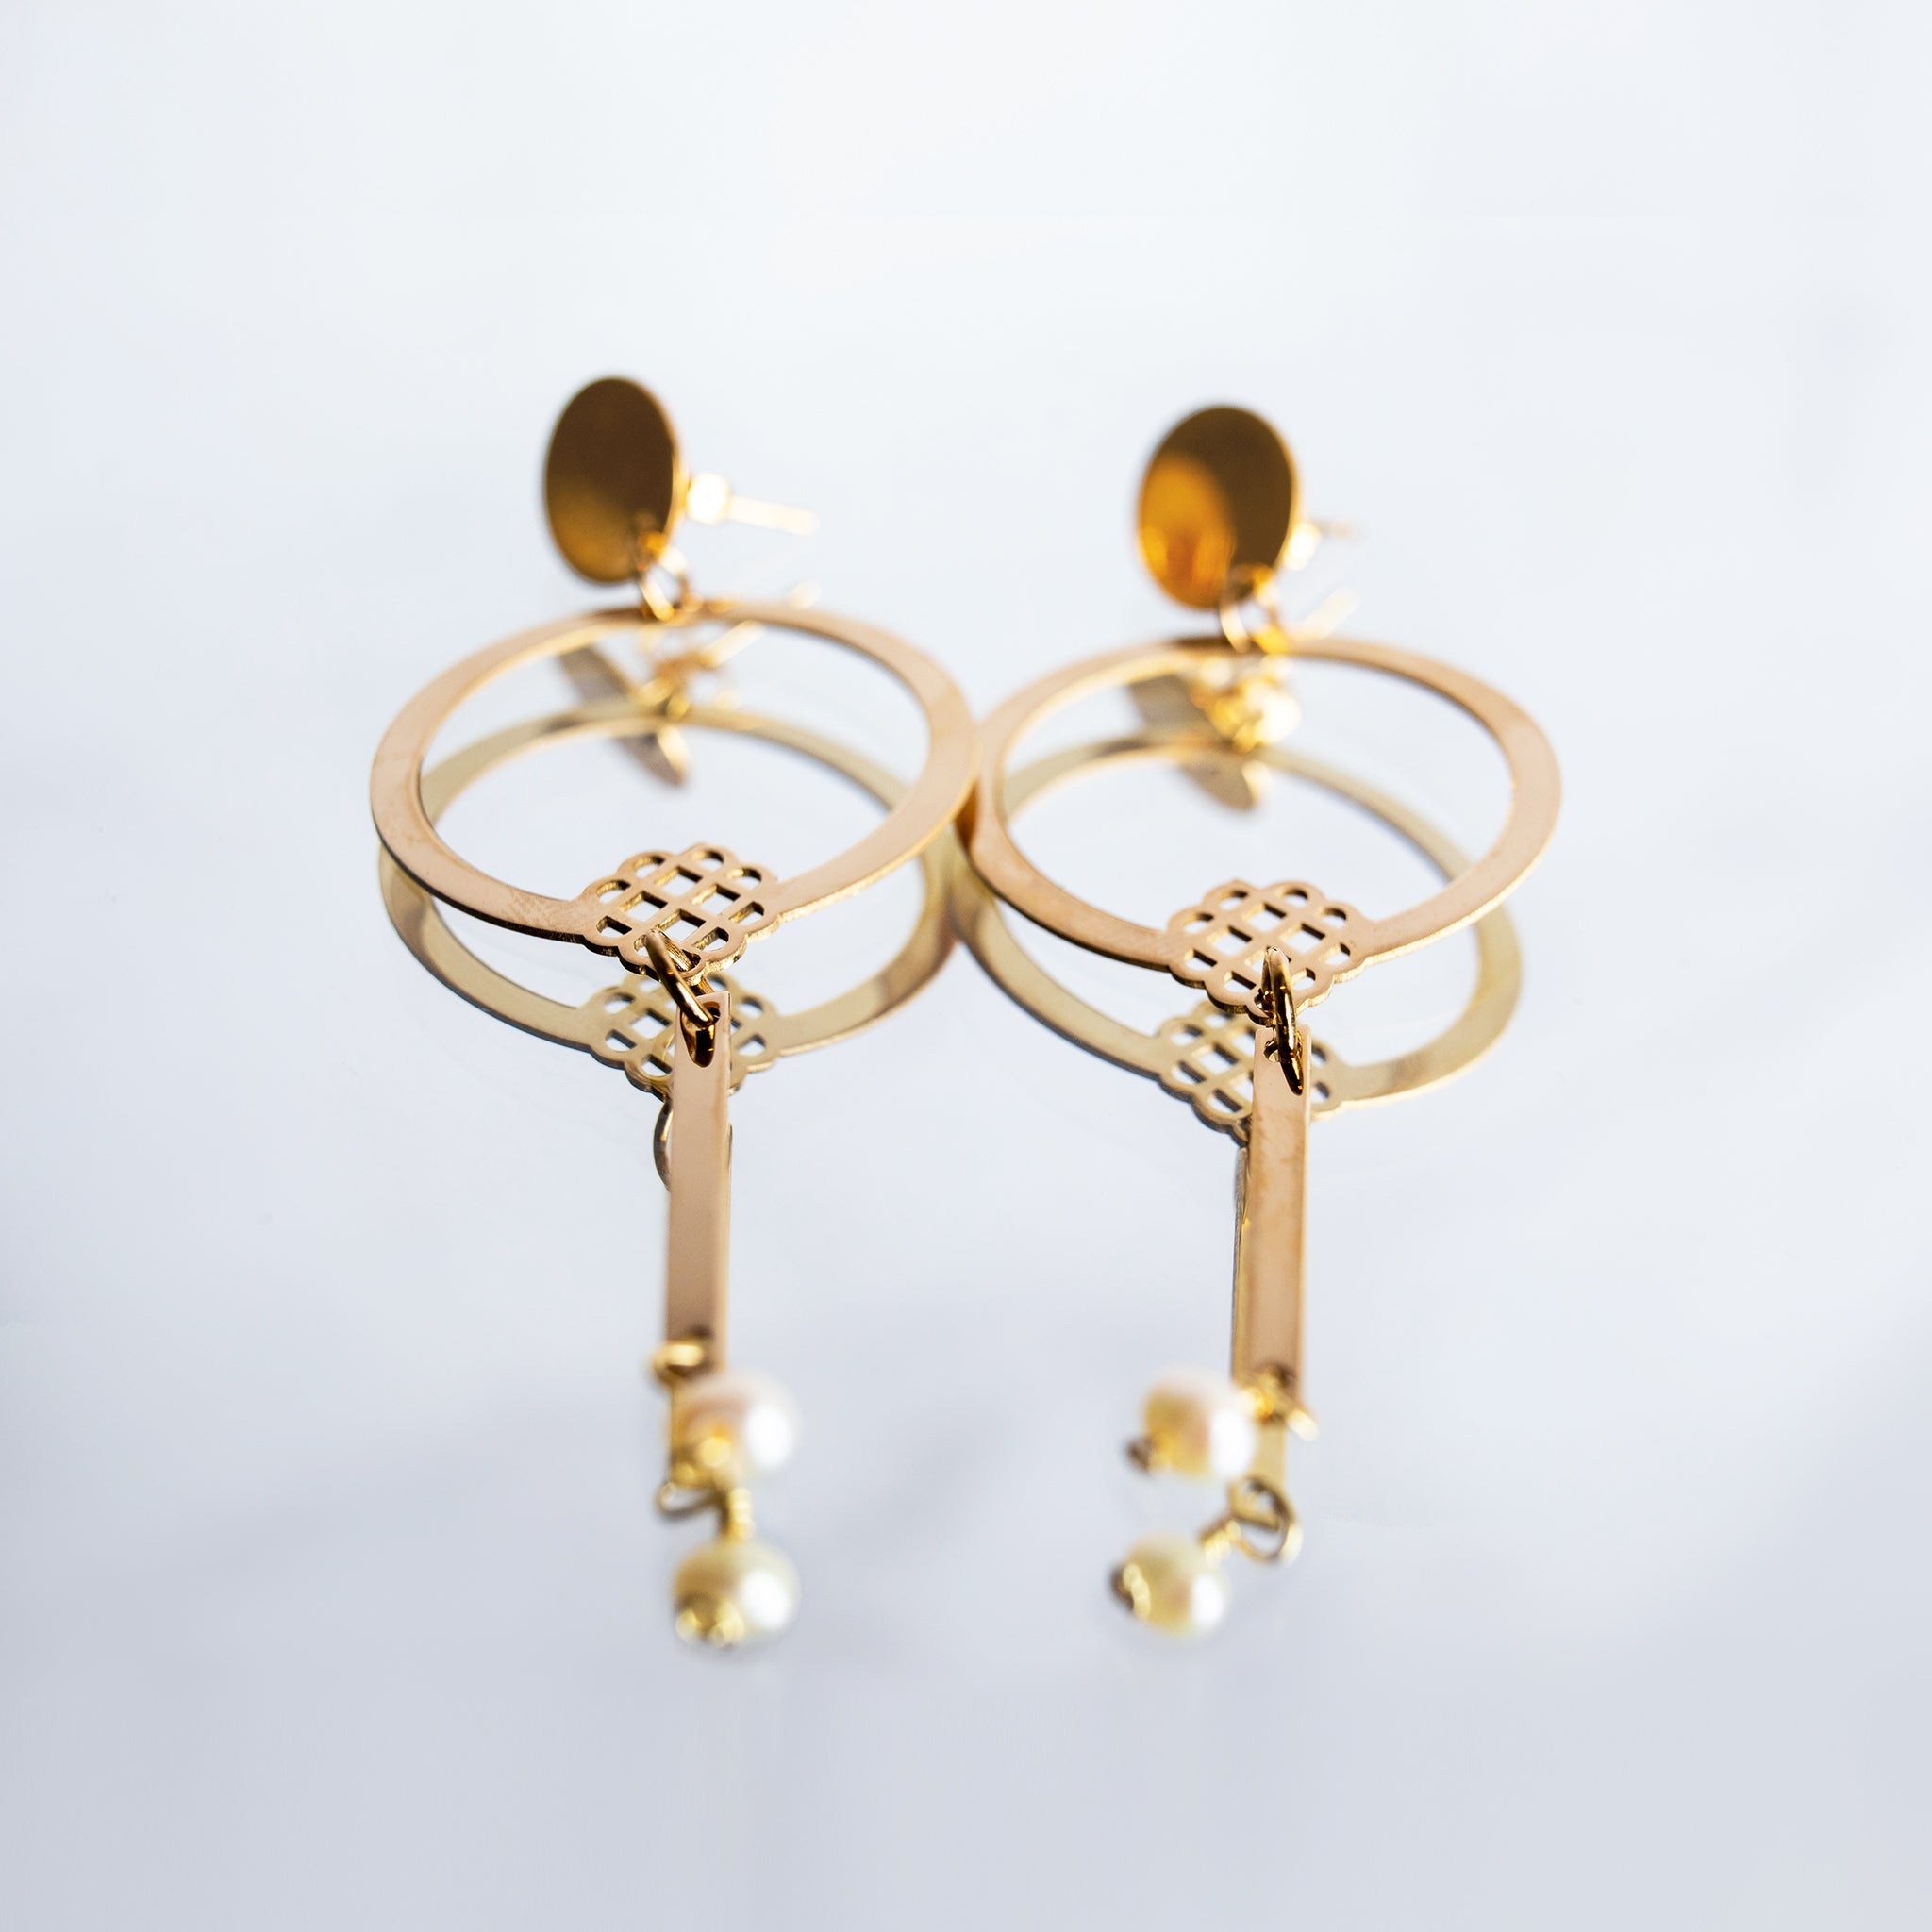 Millié Jewelry - Millié Jewelry - Millié Circle Statement Earrings - Aretes - Diseño Mexicano - Hecho en México